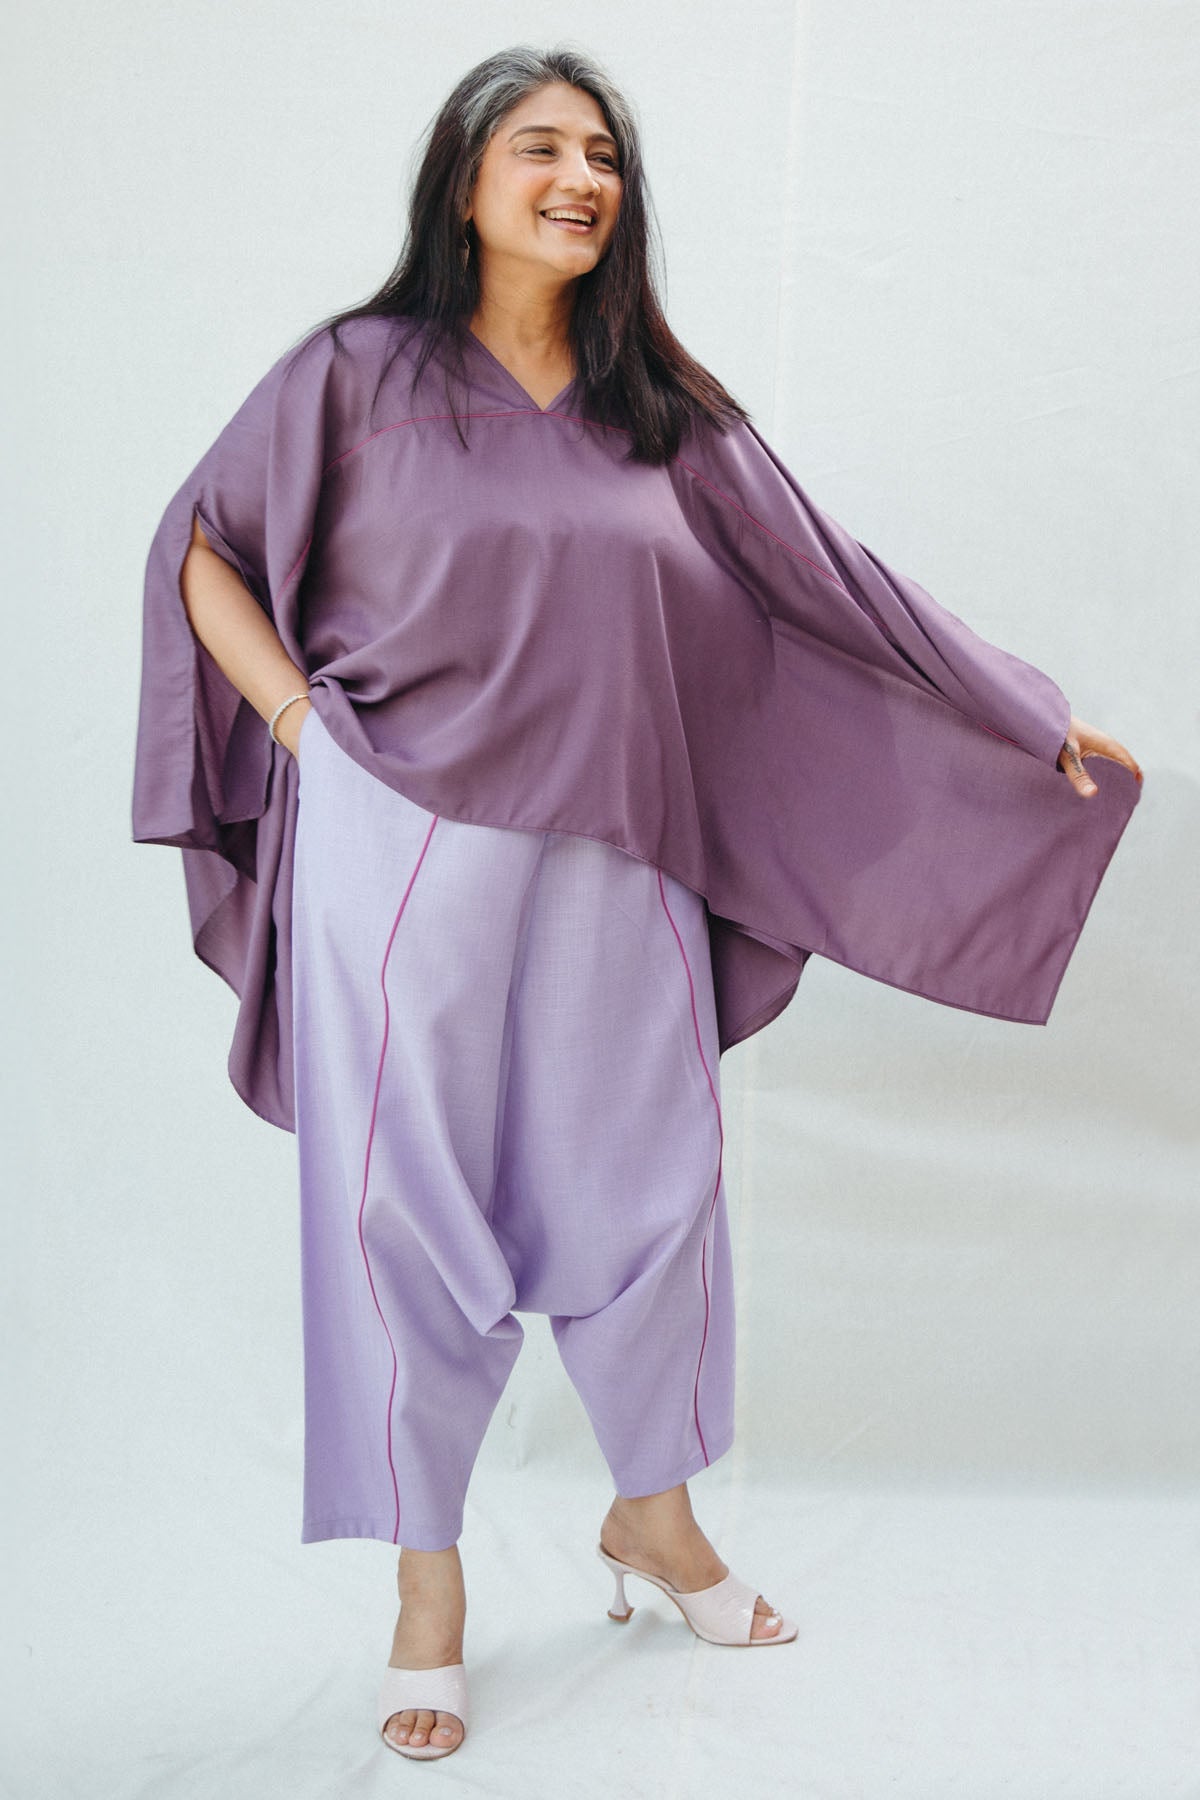 Chhaya Gandhi Purple Cotton Short Kaftan Top for women online at ScrollnShops